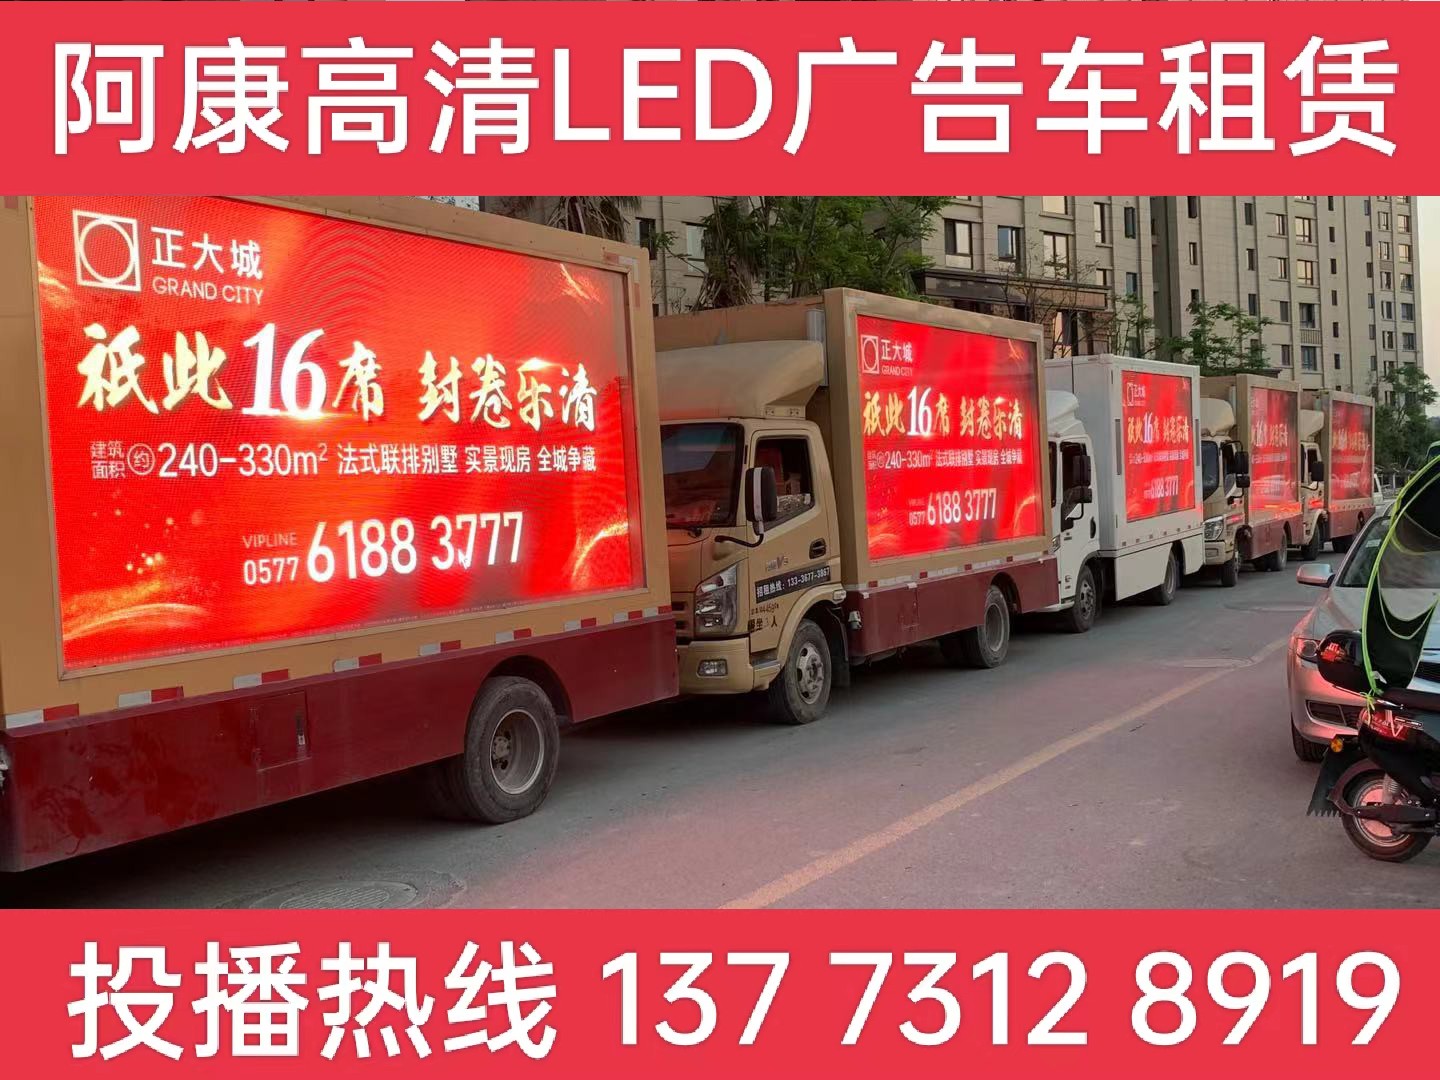 靖江LED广告车出租